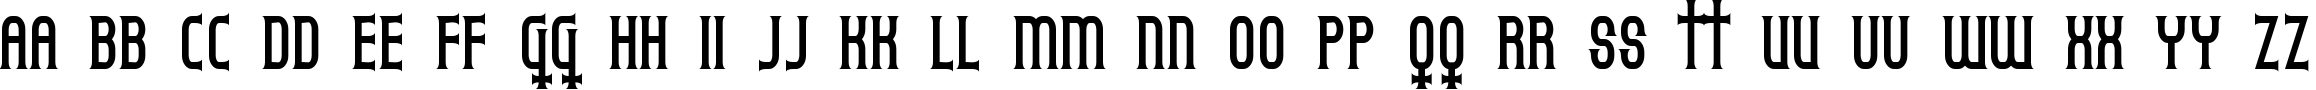 Пример написания английского алфавита шрифтом Gothicum